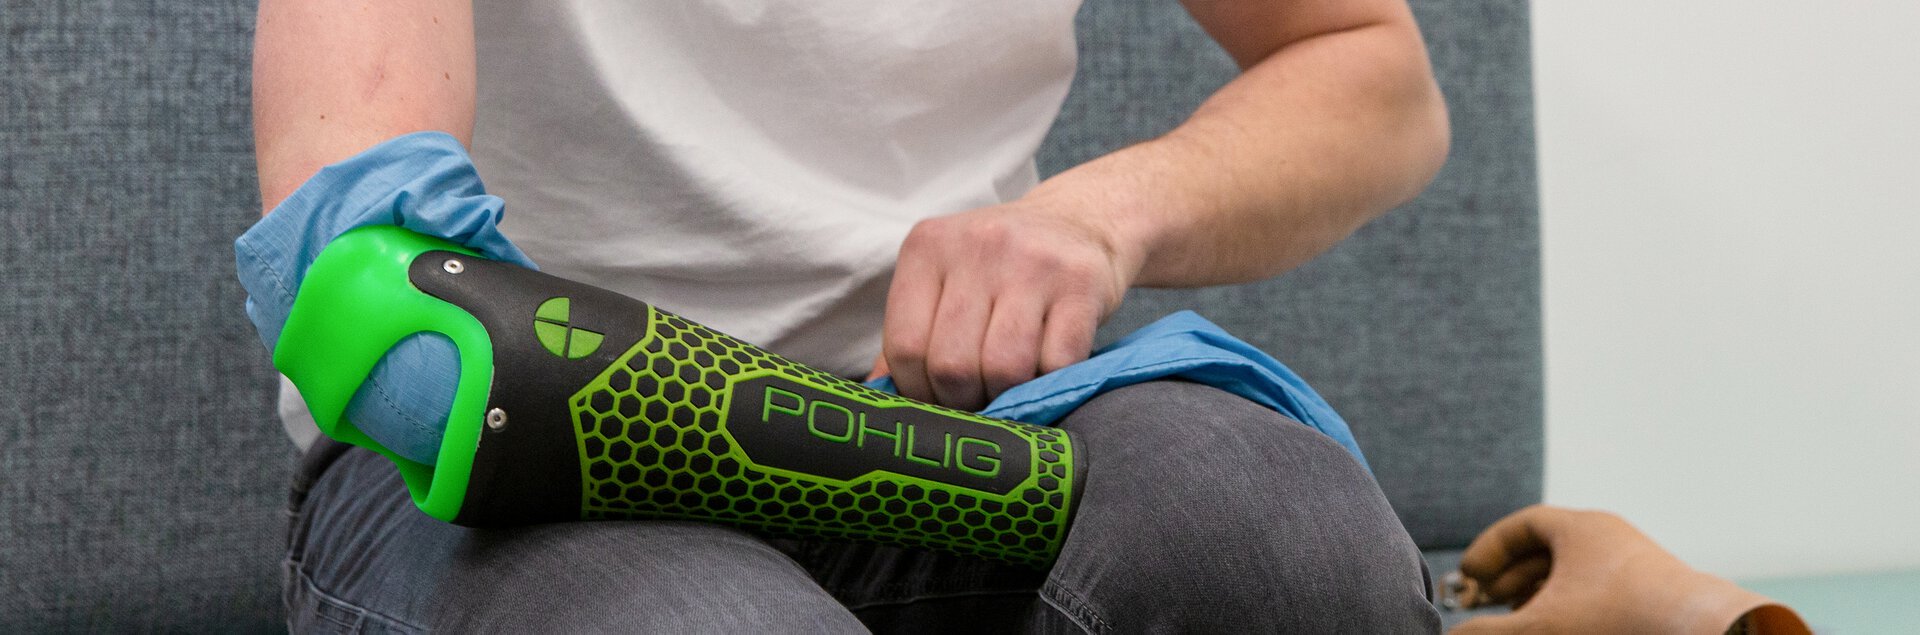 Anziehen einer Armprothese mit Anziehhilfe | © Pohlig GmbH